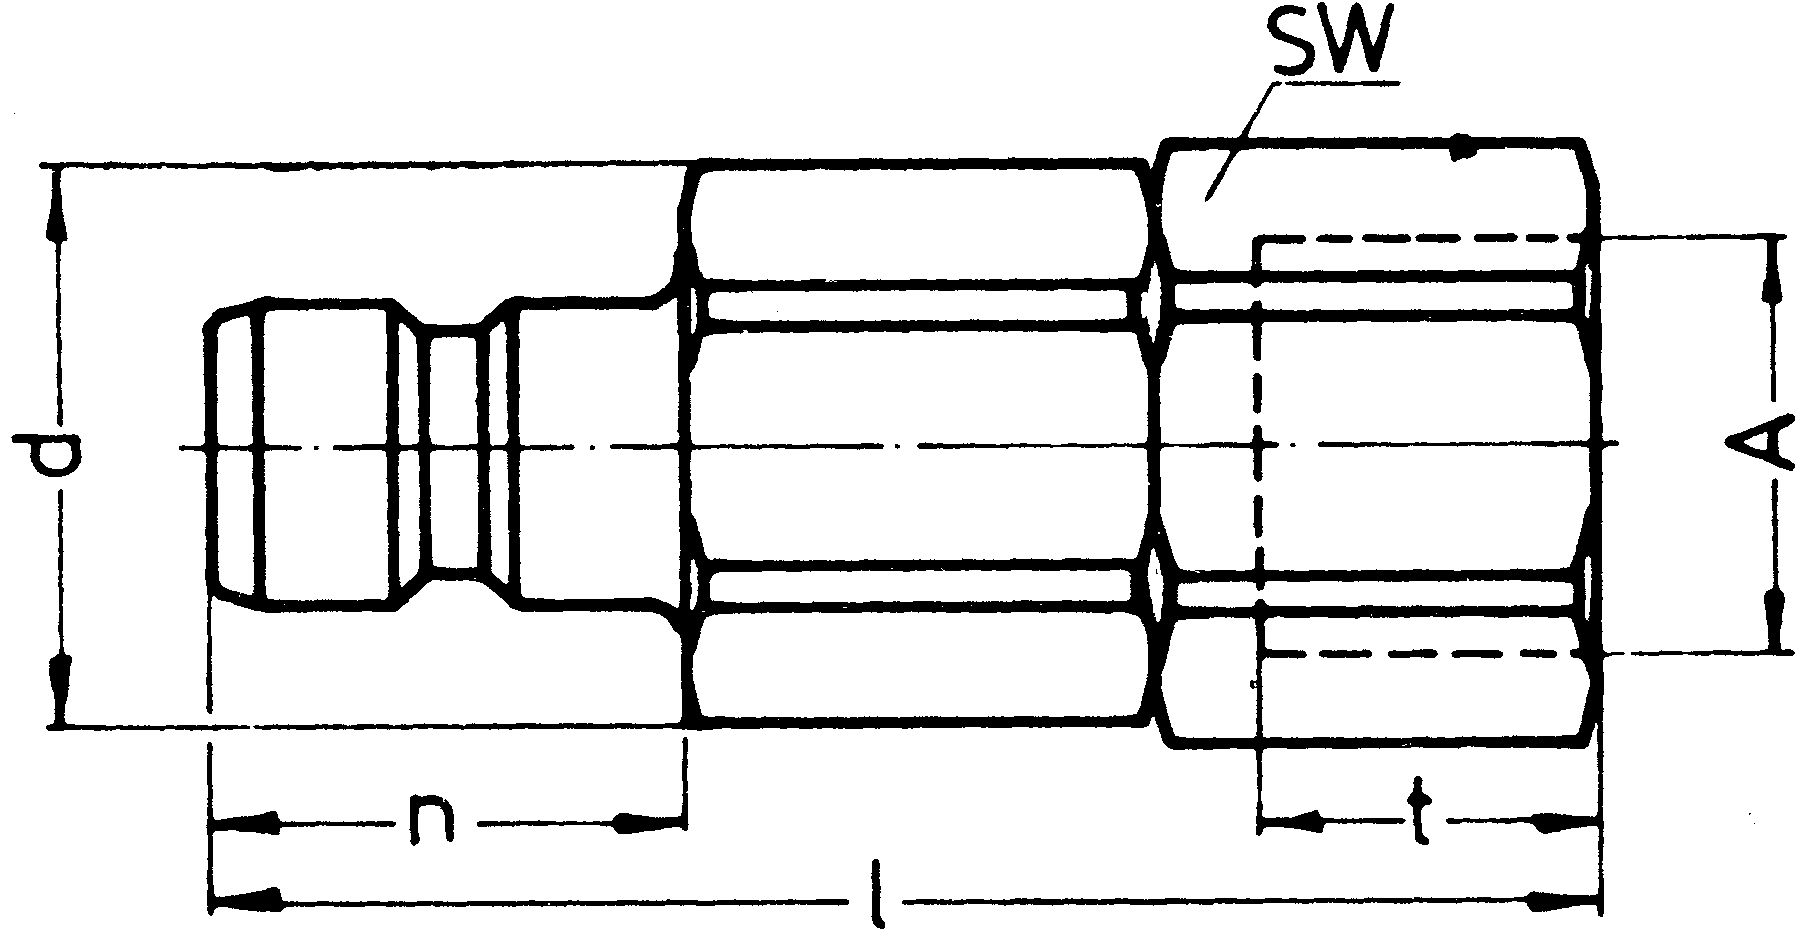 SP-009-2-WR521-21-1-Z02-EB